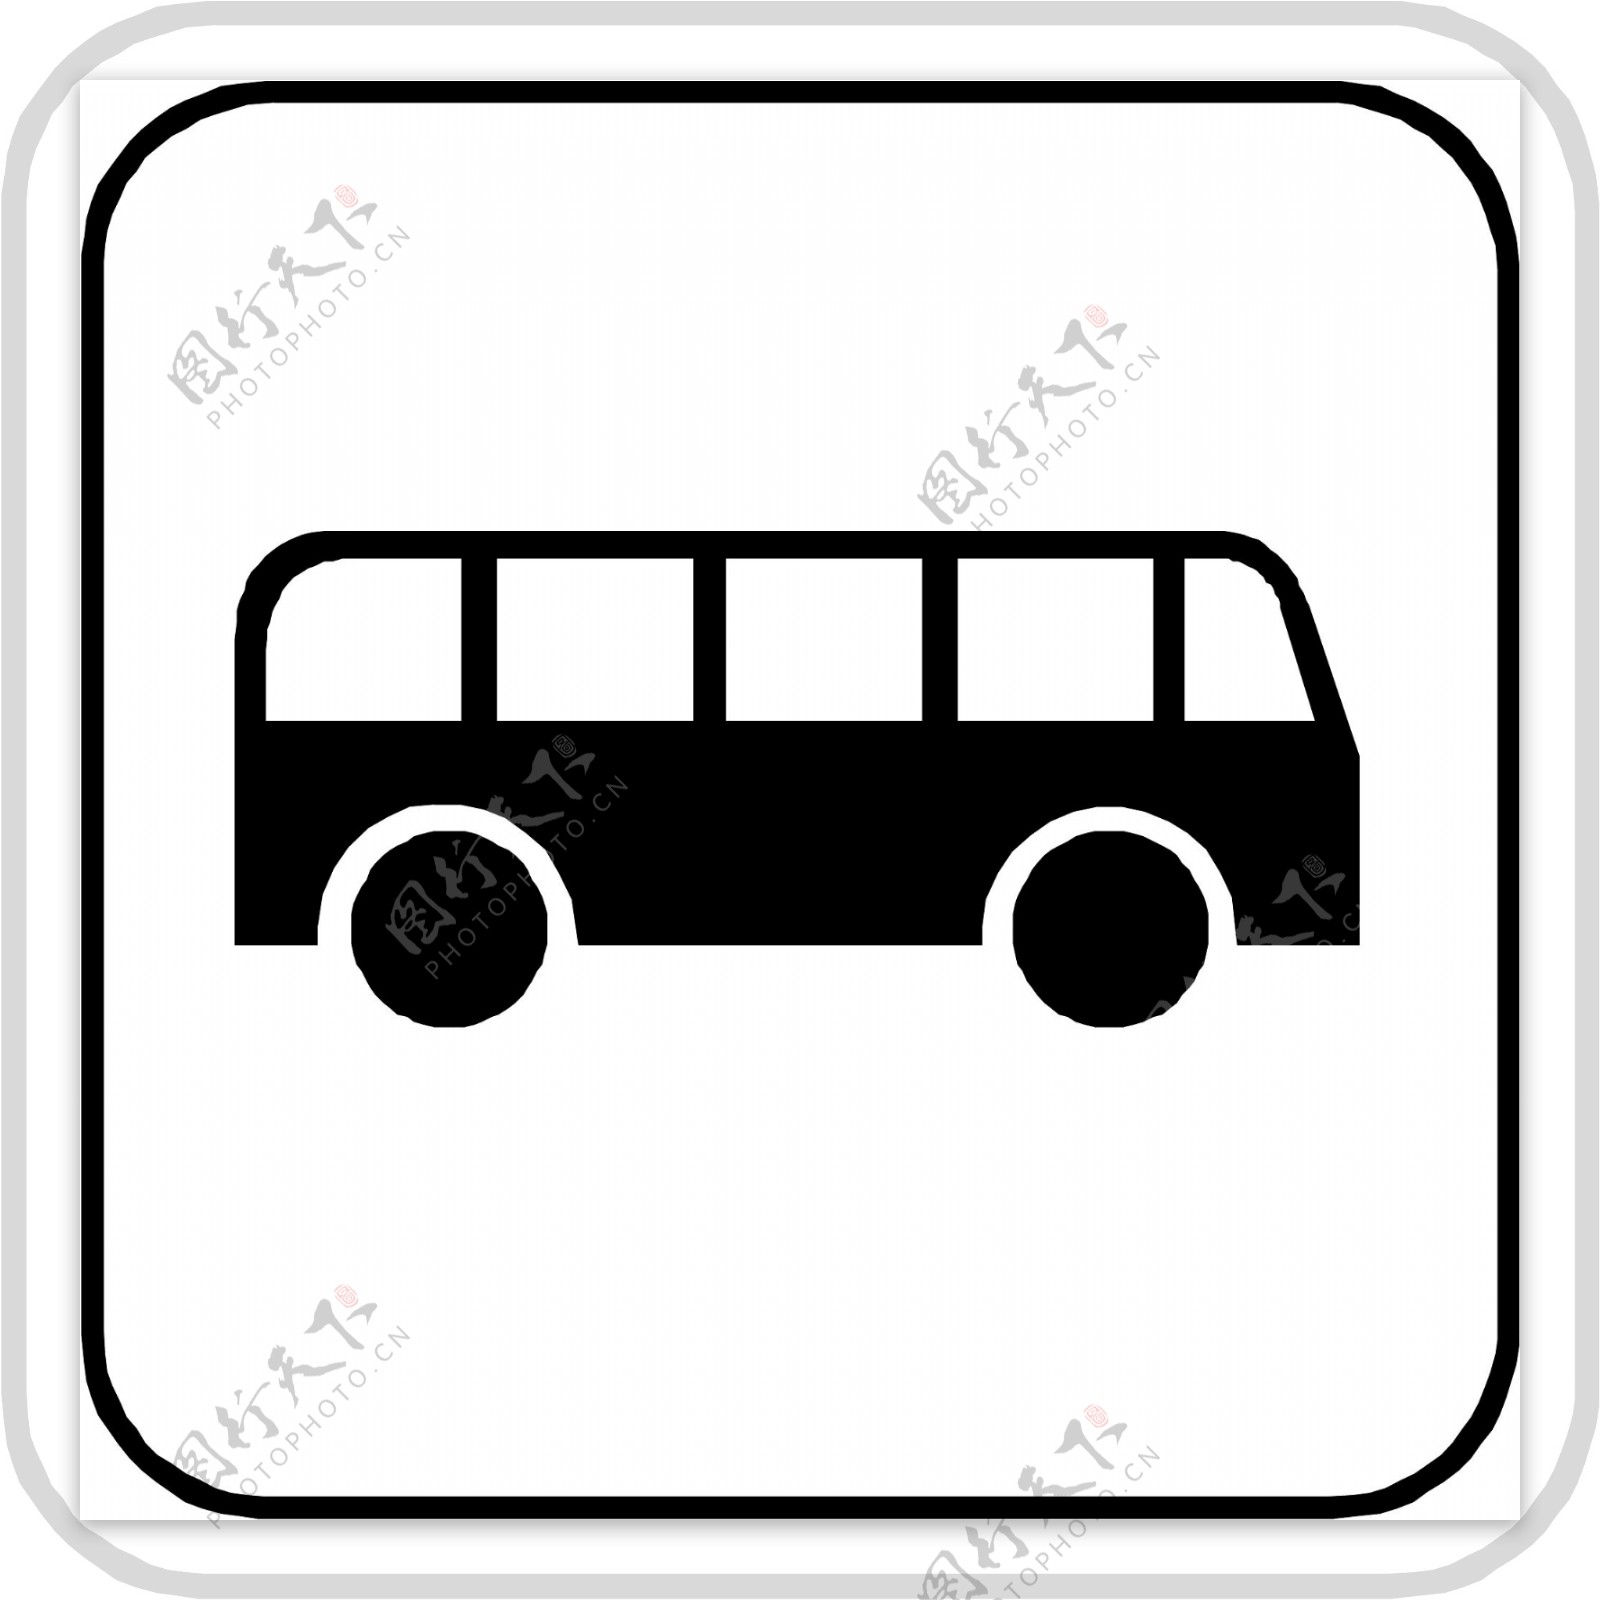 公交车标识图片